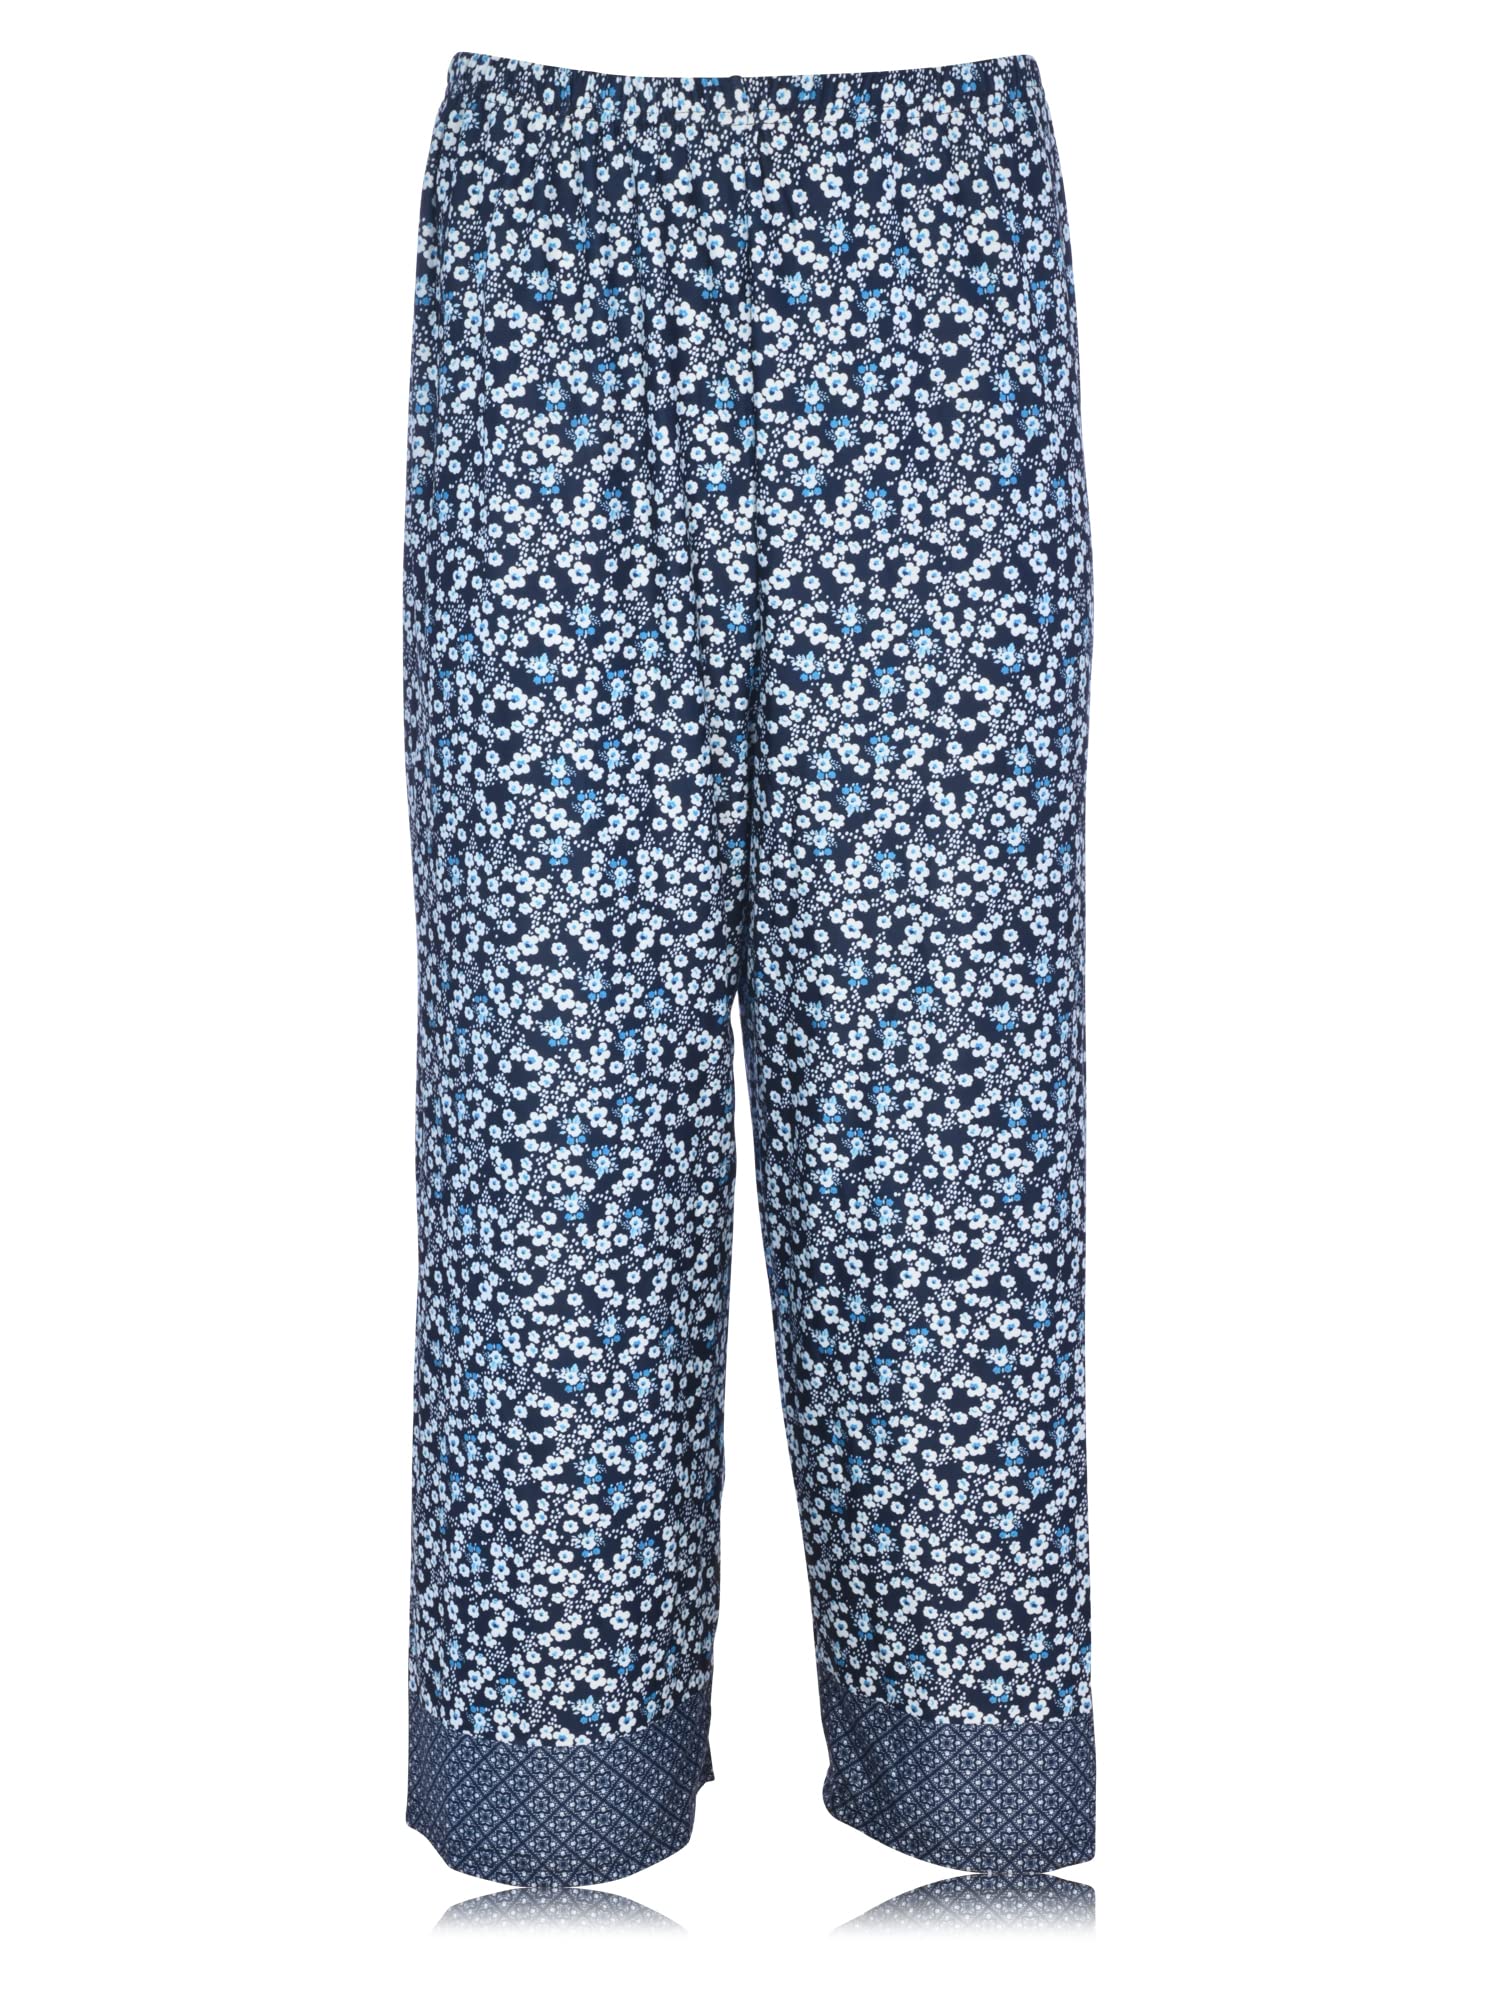 JEFFRICO Womens Pajamas For Women Ankle Length Pajamas Set